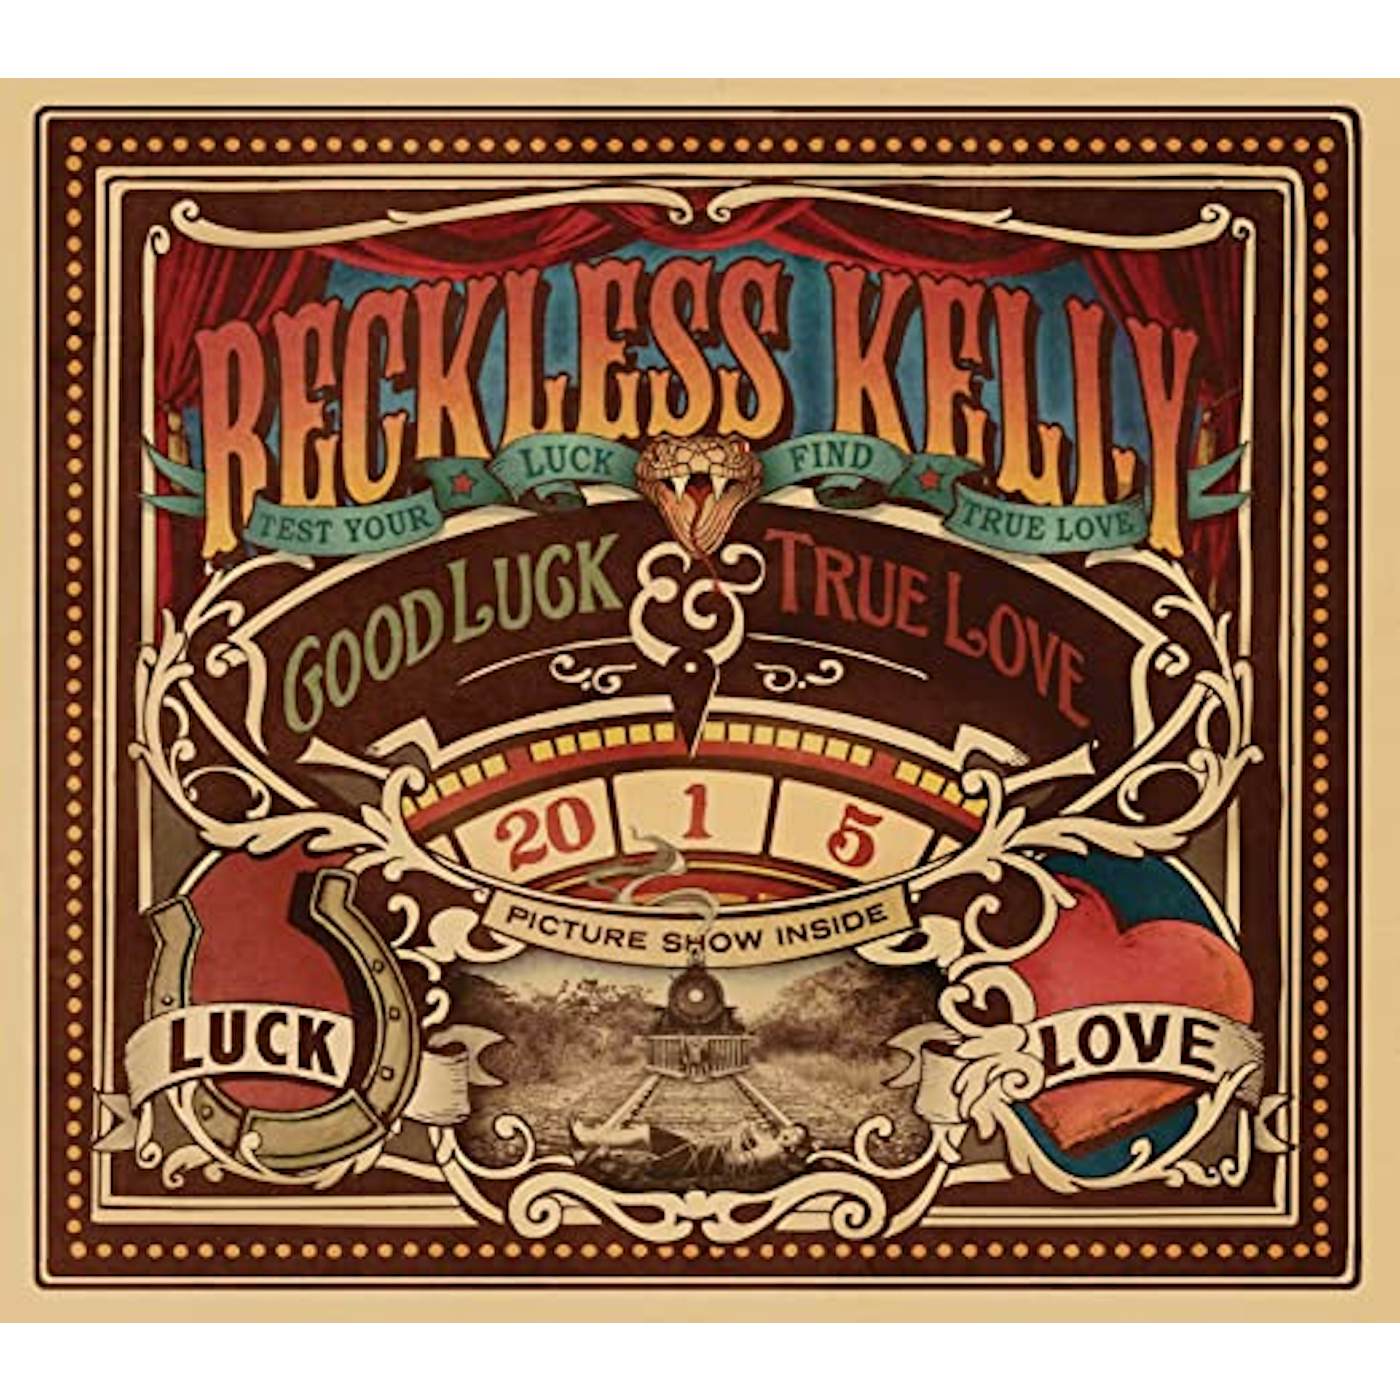 Reckless Kelly Good Luck & True Love Vinyl Record